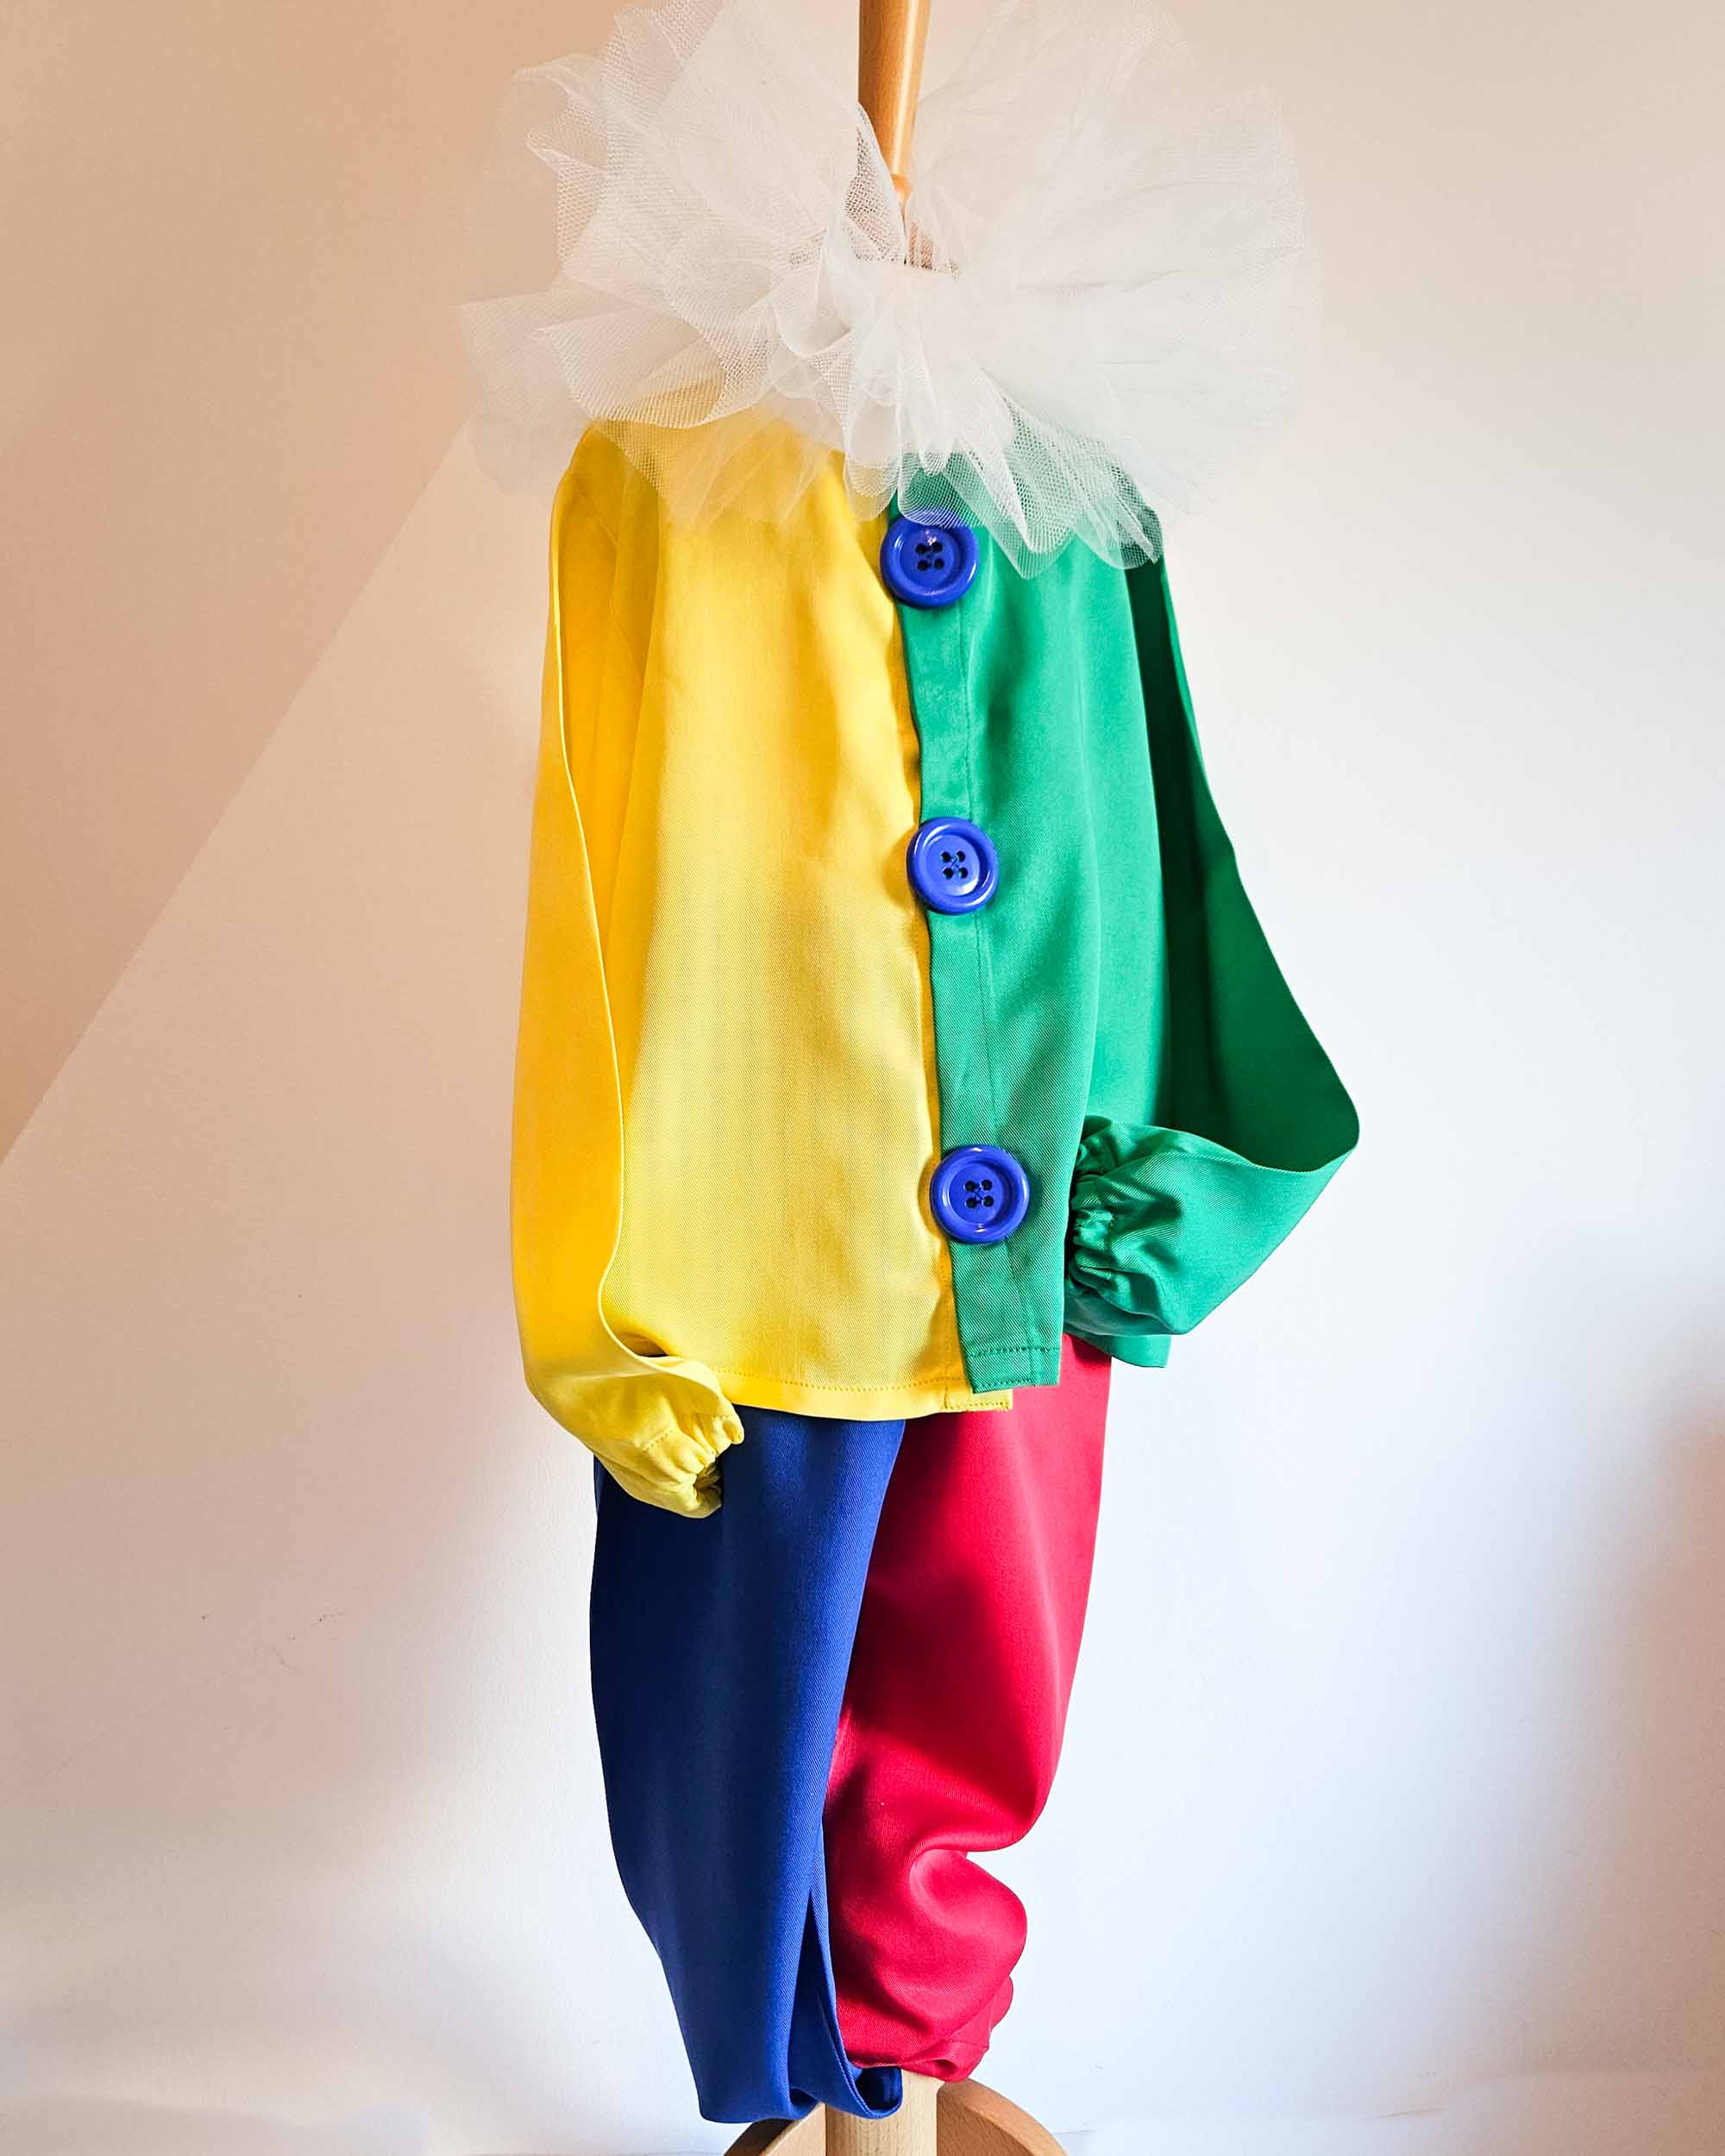 Atelier Spatz Button Clown Trouser Braces for kids